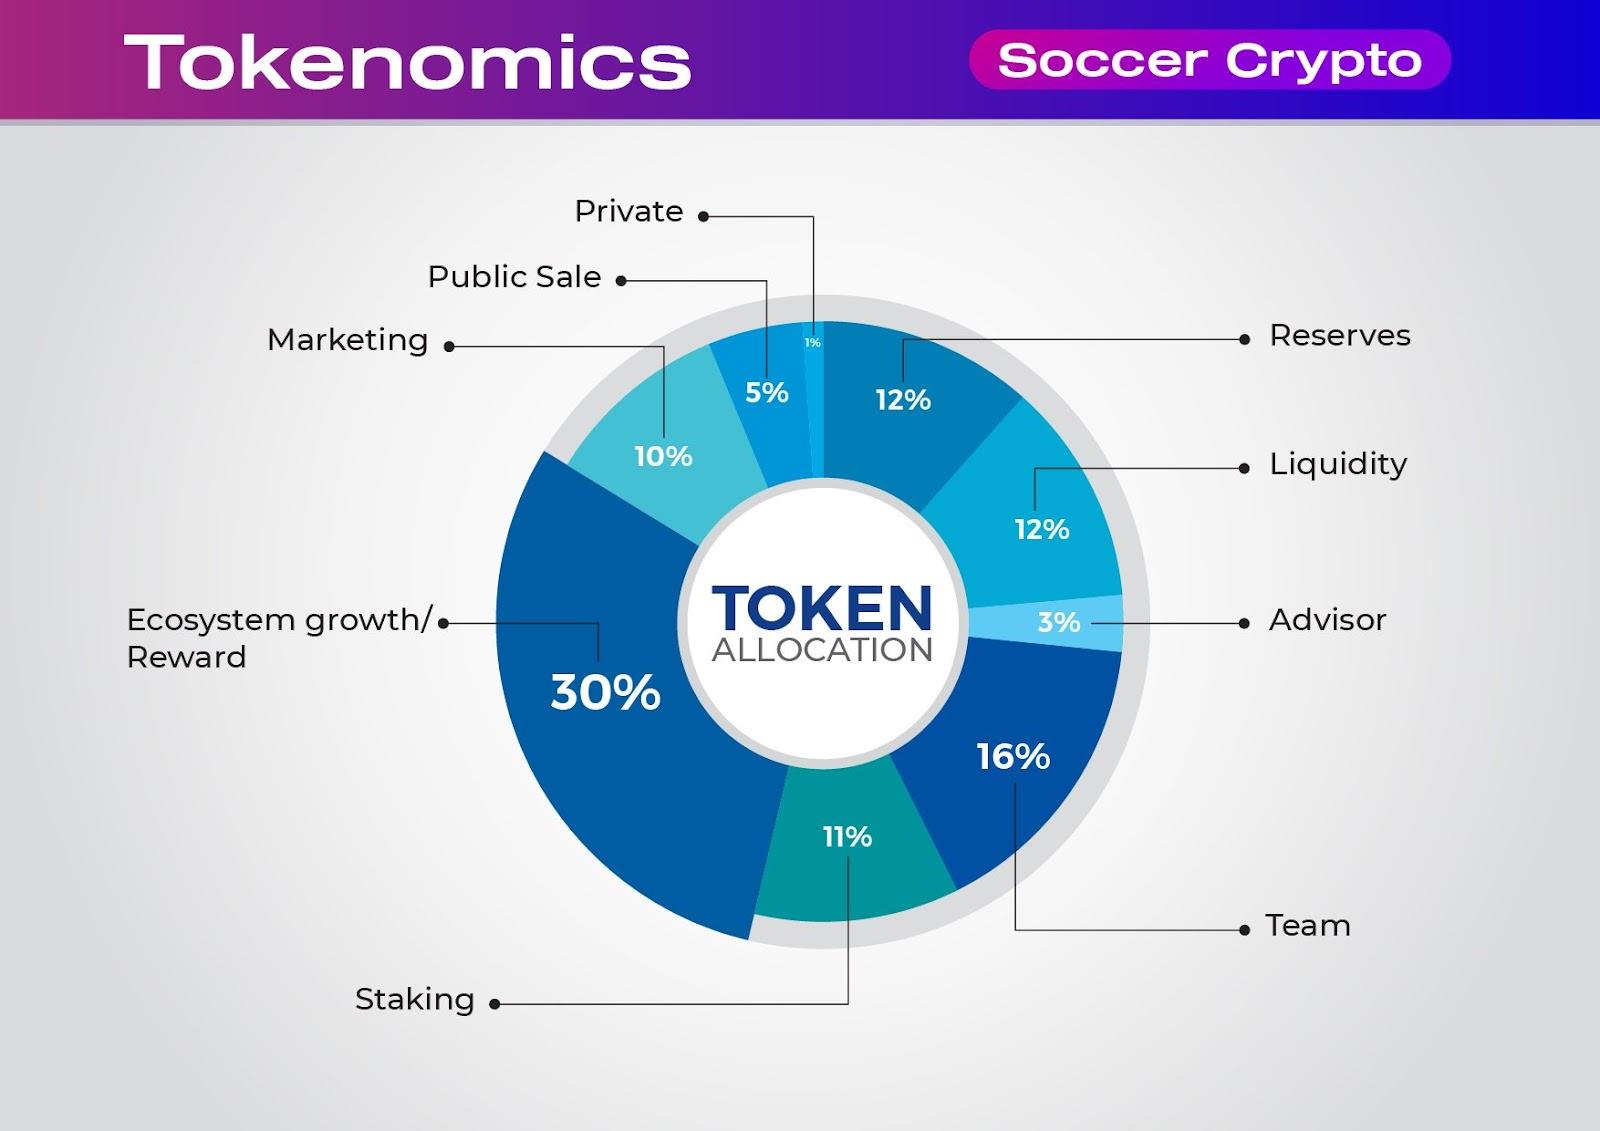 Soccer Crypto – proyek potensial untuk penggemar sepak bola dan blockchain (Audit & KYC oleh SolidProof)